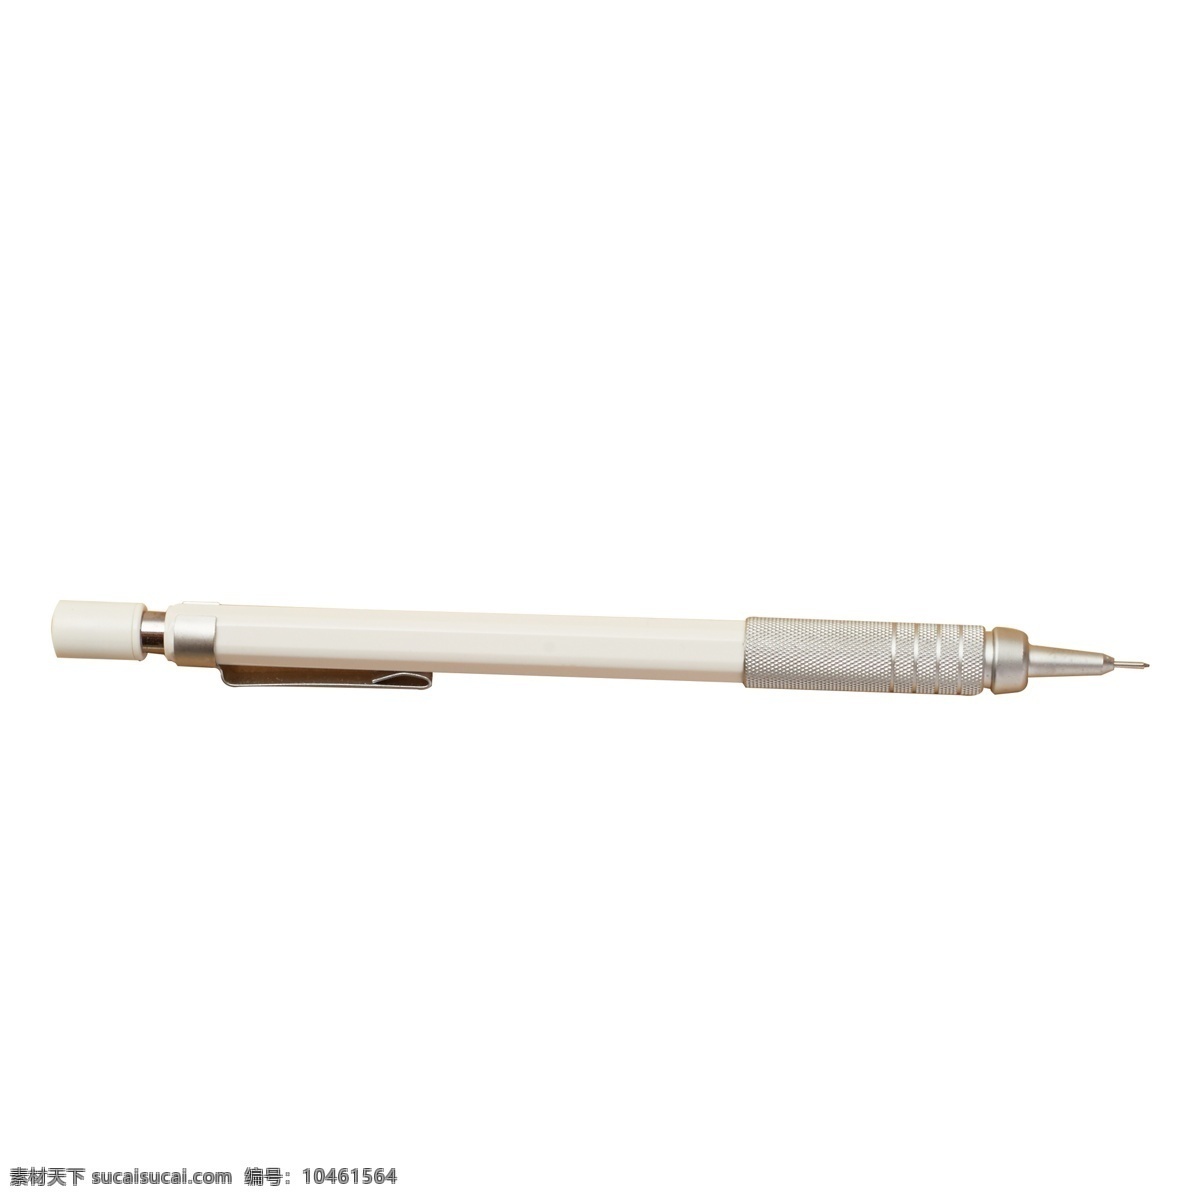 灰色 钢笔 免 抠 图 钢笔工具 写字的钢笔 书画笔 圆珠笔 灰色的笔 灰色的钢笔 办公用品 免抠图